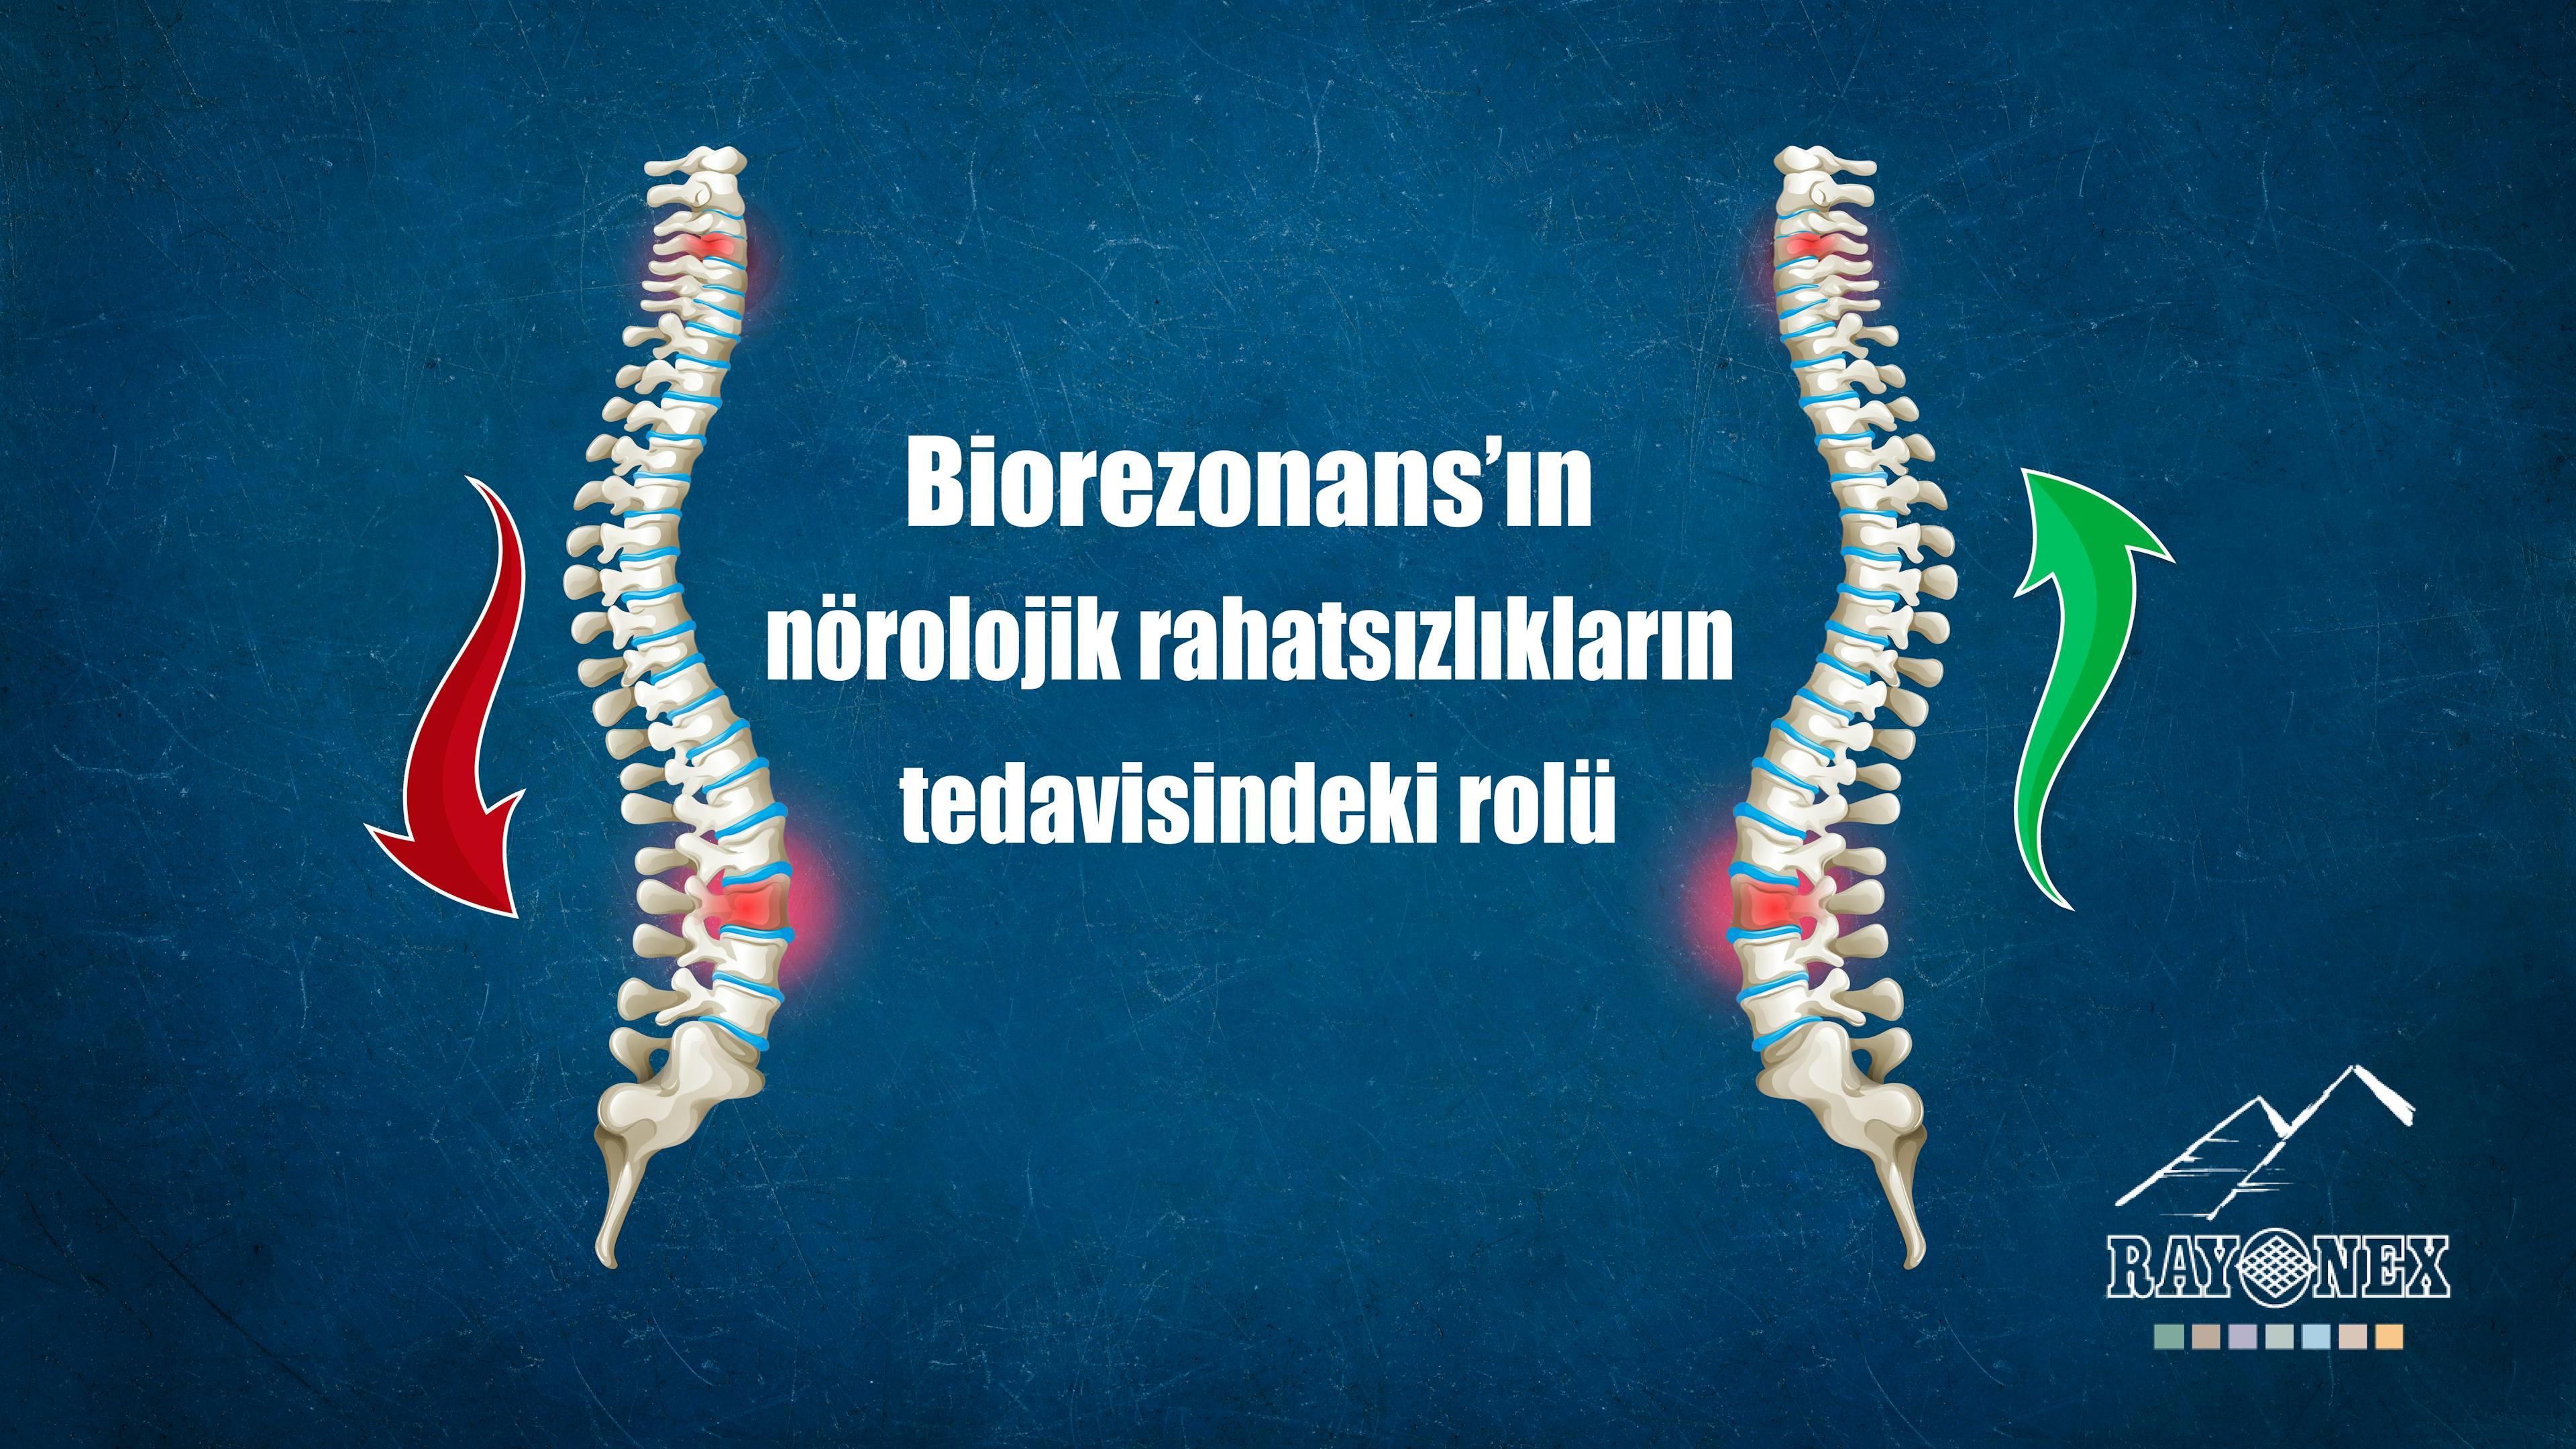 Biorezonans’ın nörolojik rahatsızlıkların tedavisindeki rolü